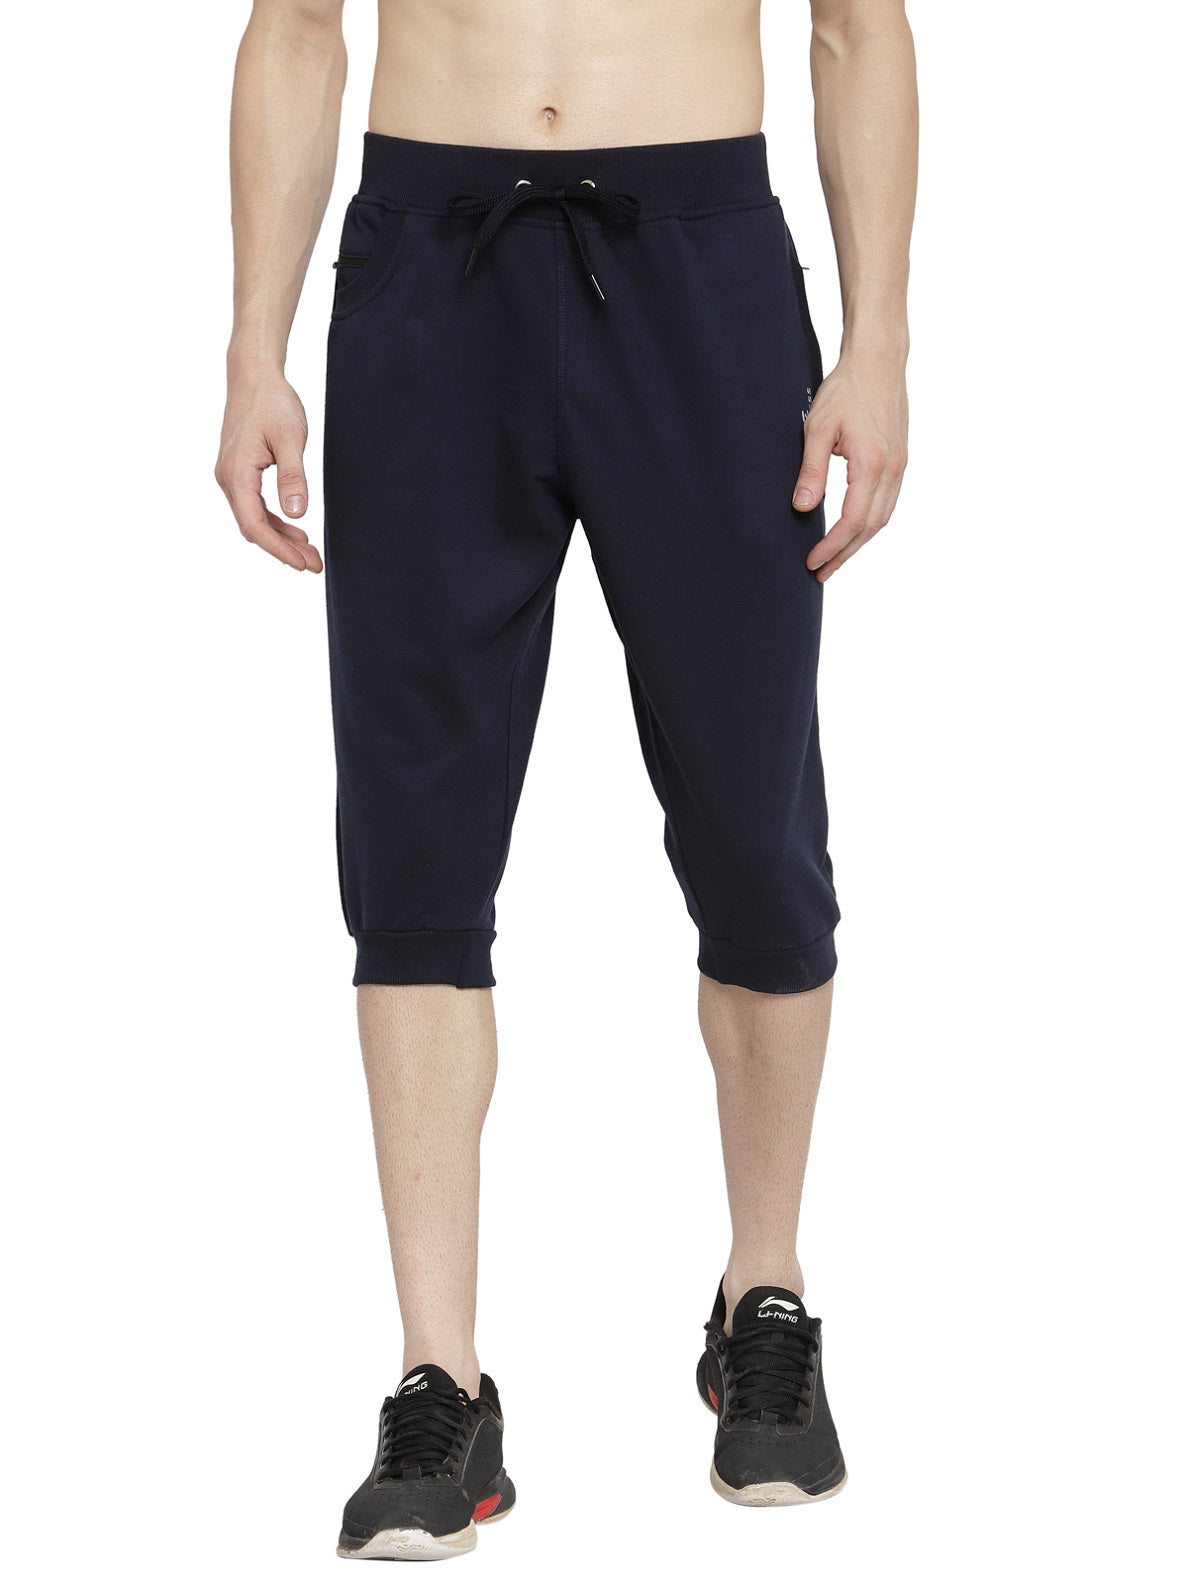 Amazoncom Mens Capri Pants Casual Baggy Cotton Linen Pocket Lounge Harem  Pants Beach Long Shorts M Black